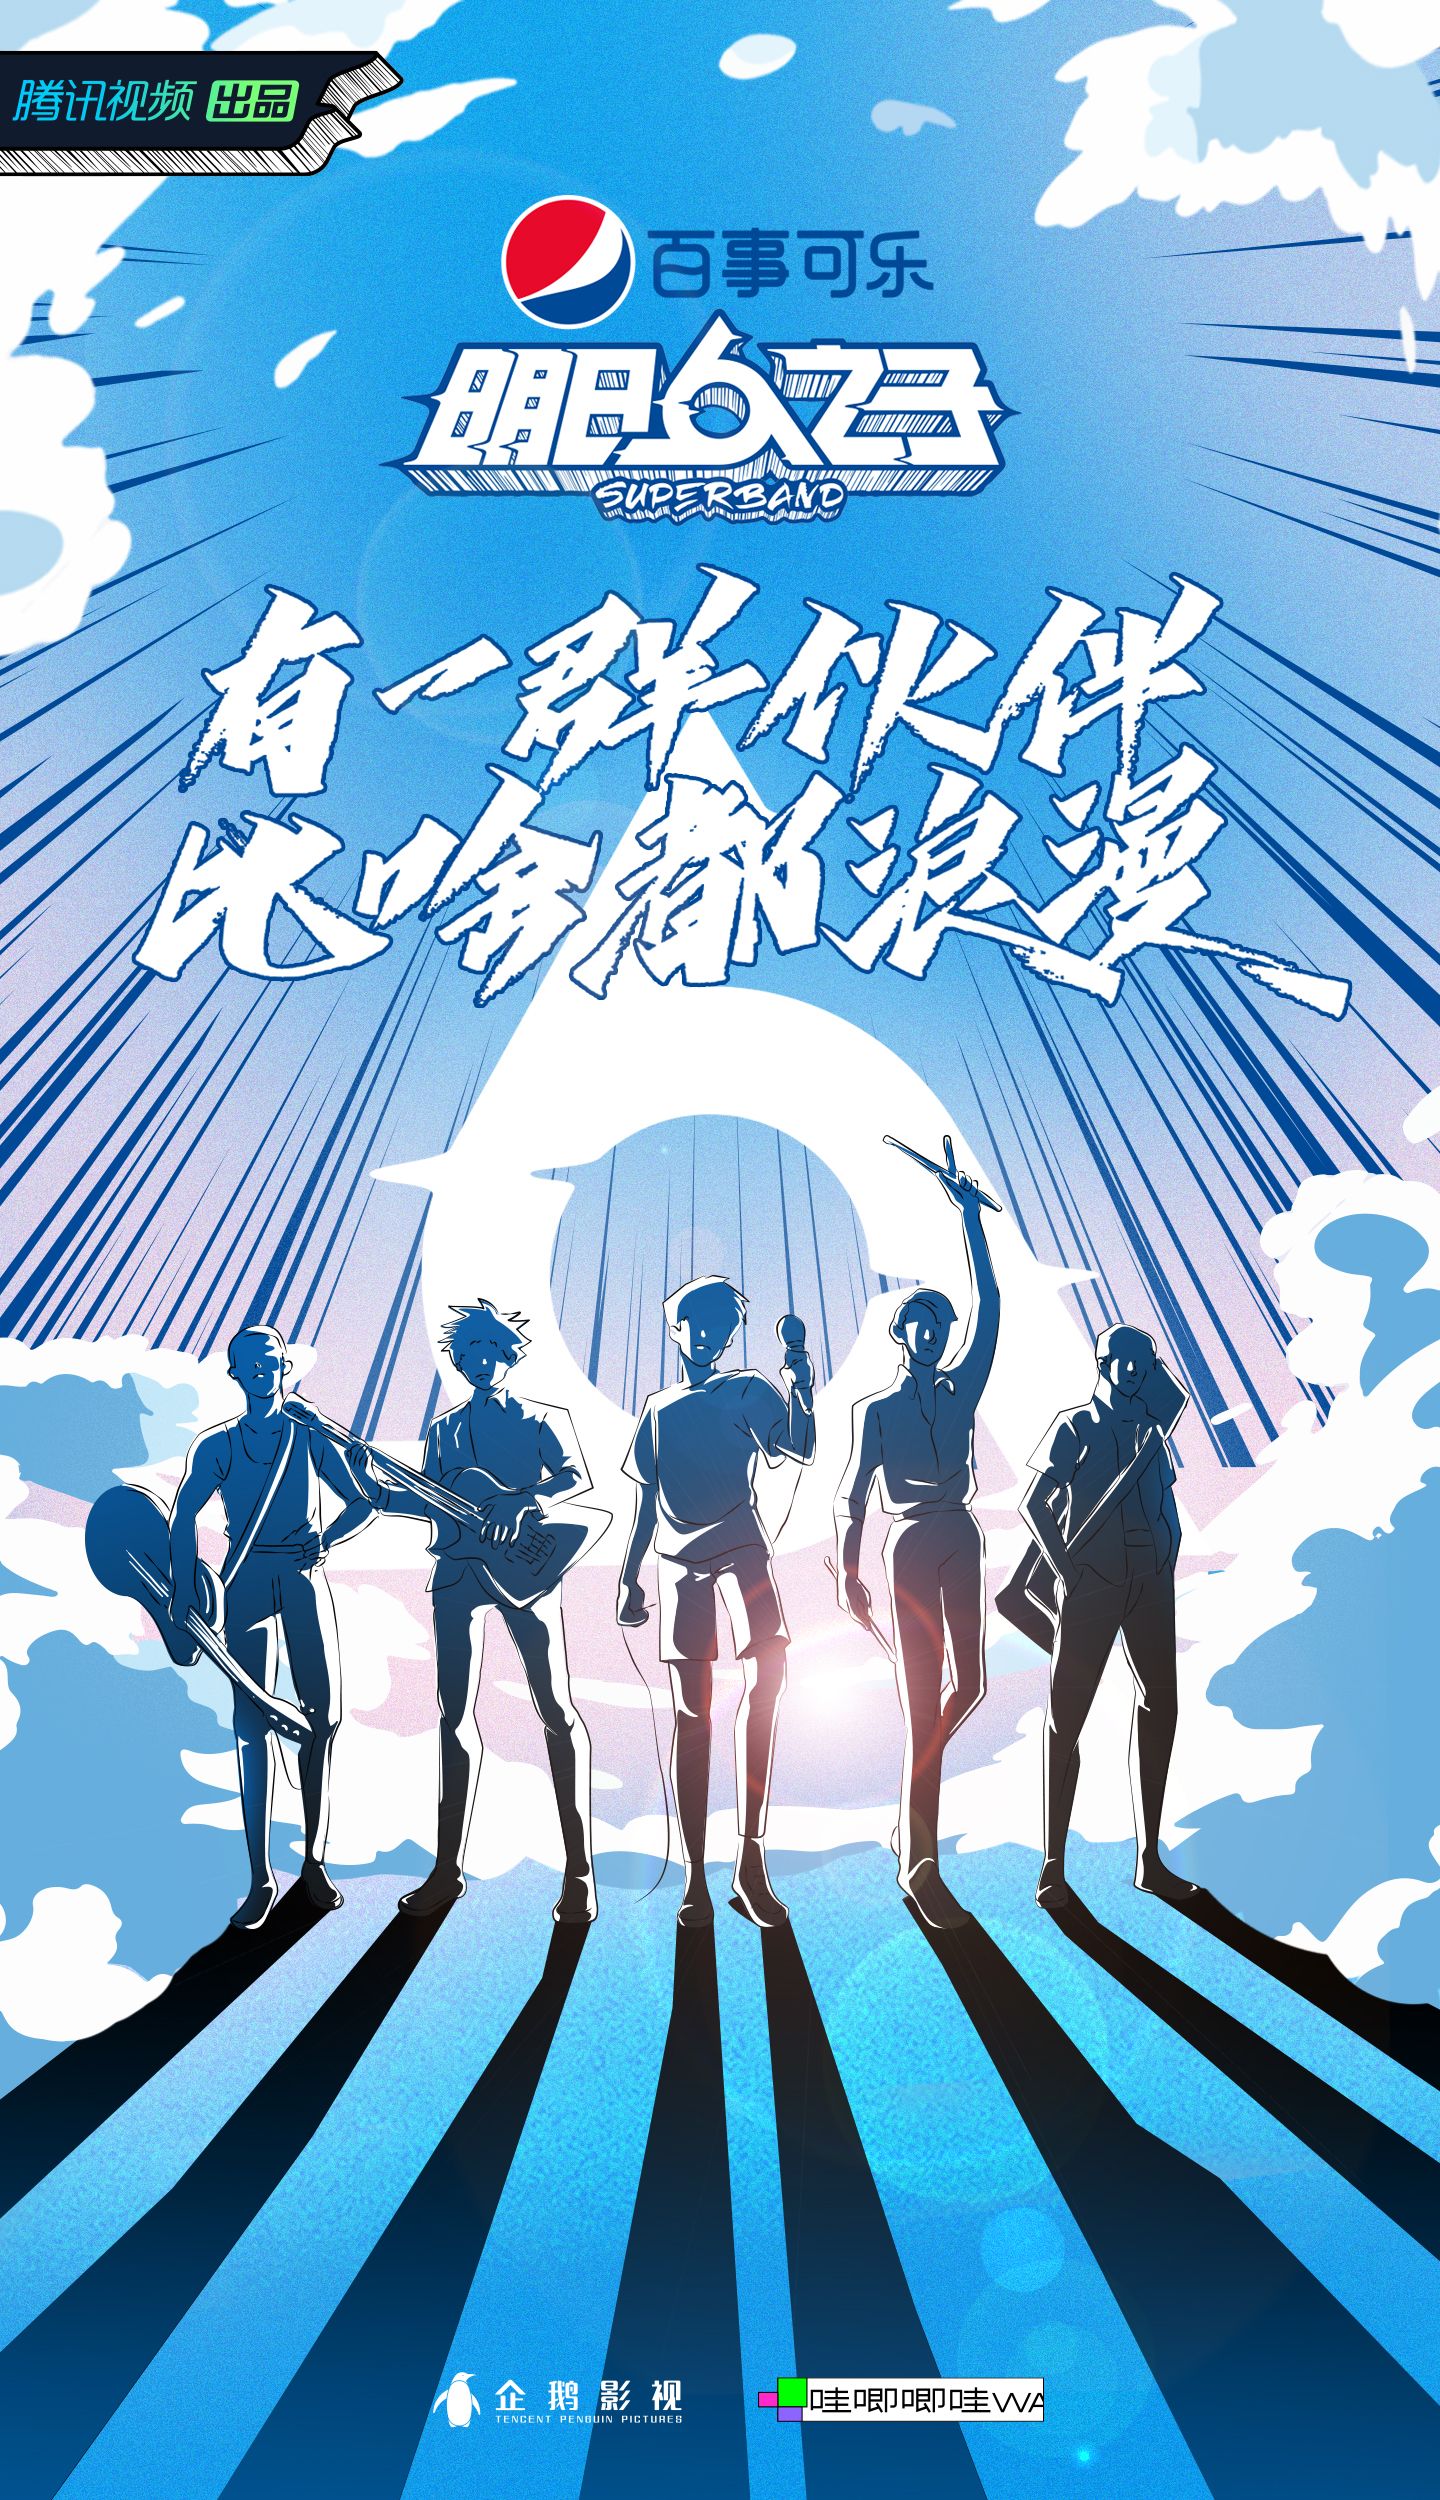 6、《明日之子乐团季》概念海报.jpg